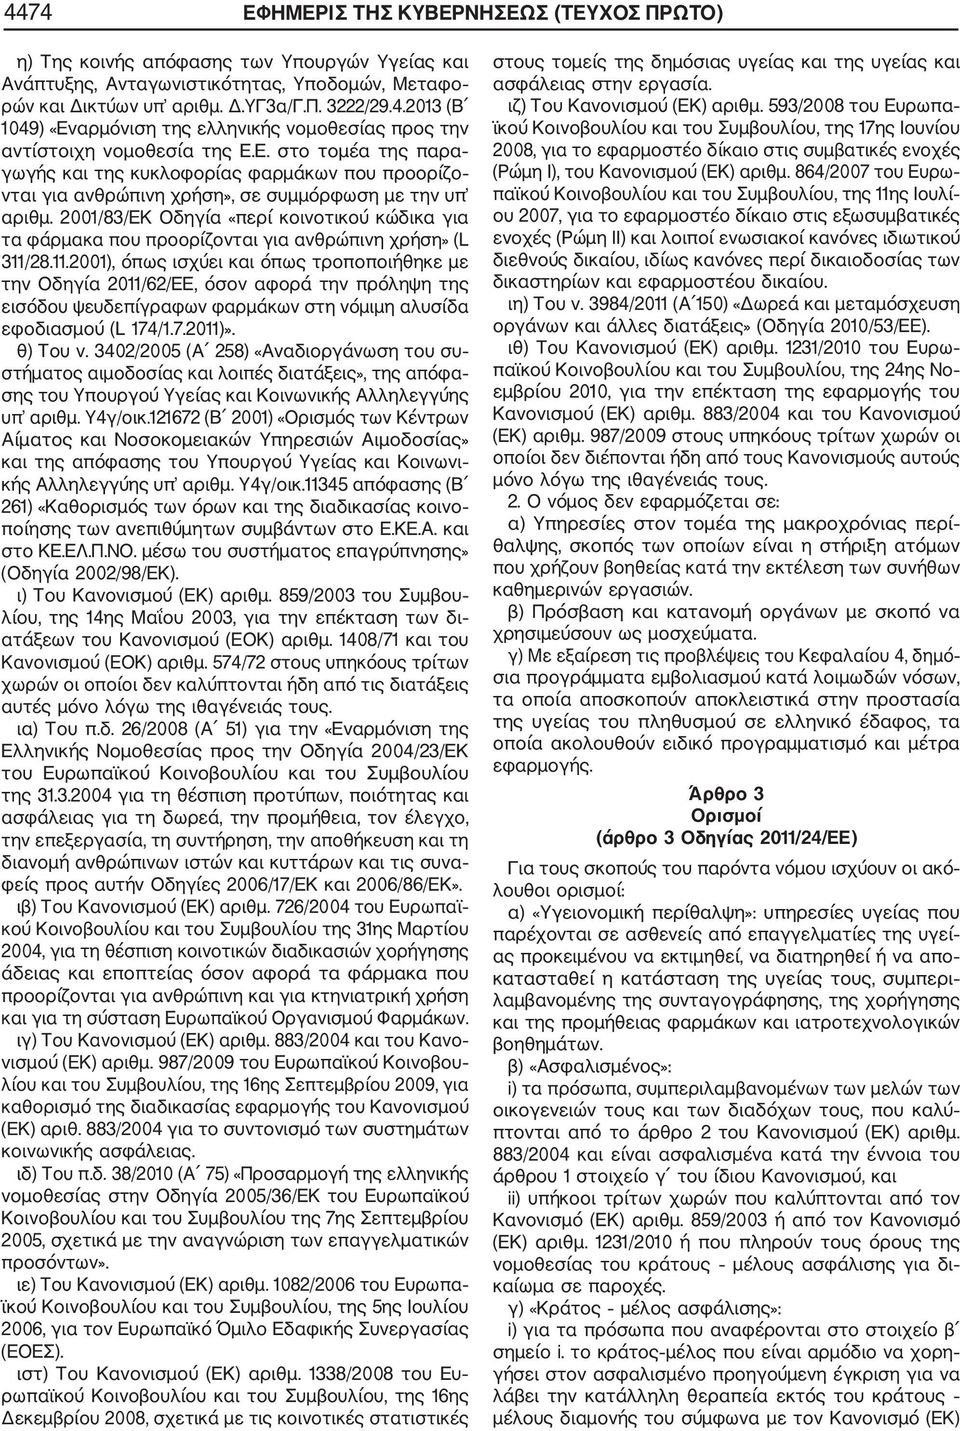 2001/83/ΕΚ Οδηγία «περί κοινοτικού κώδικα για τα φάρμακα που προορίζονται για ανθρώπινη χρήση» (L 311/